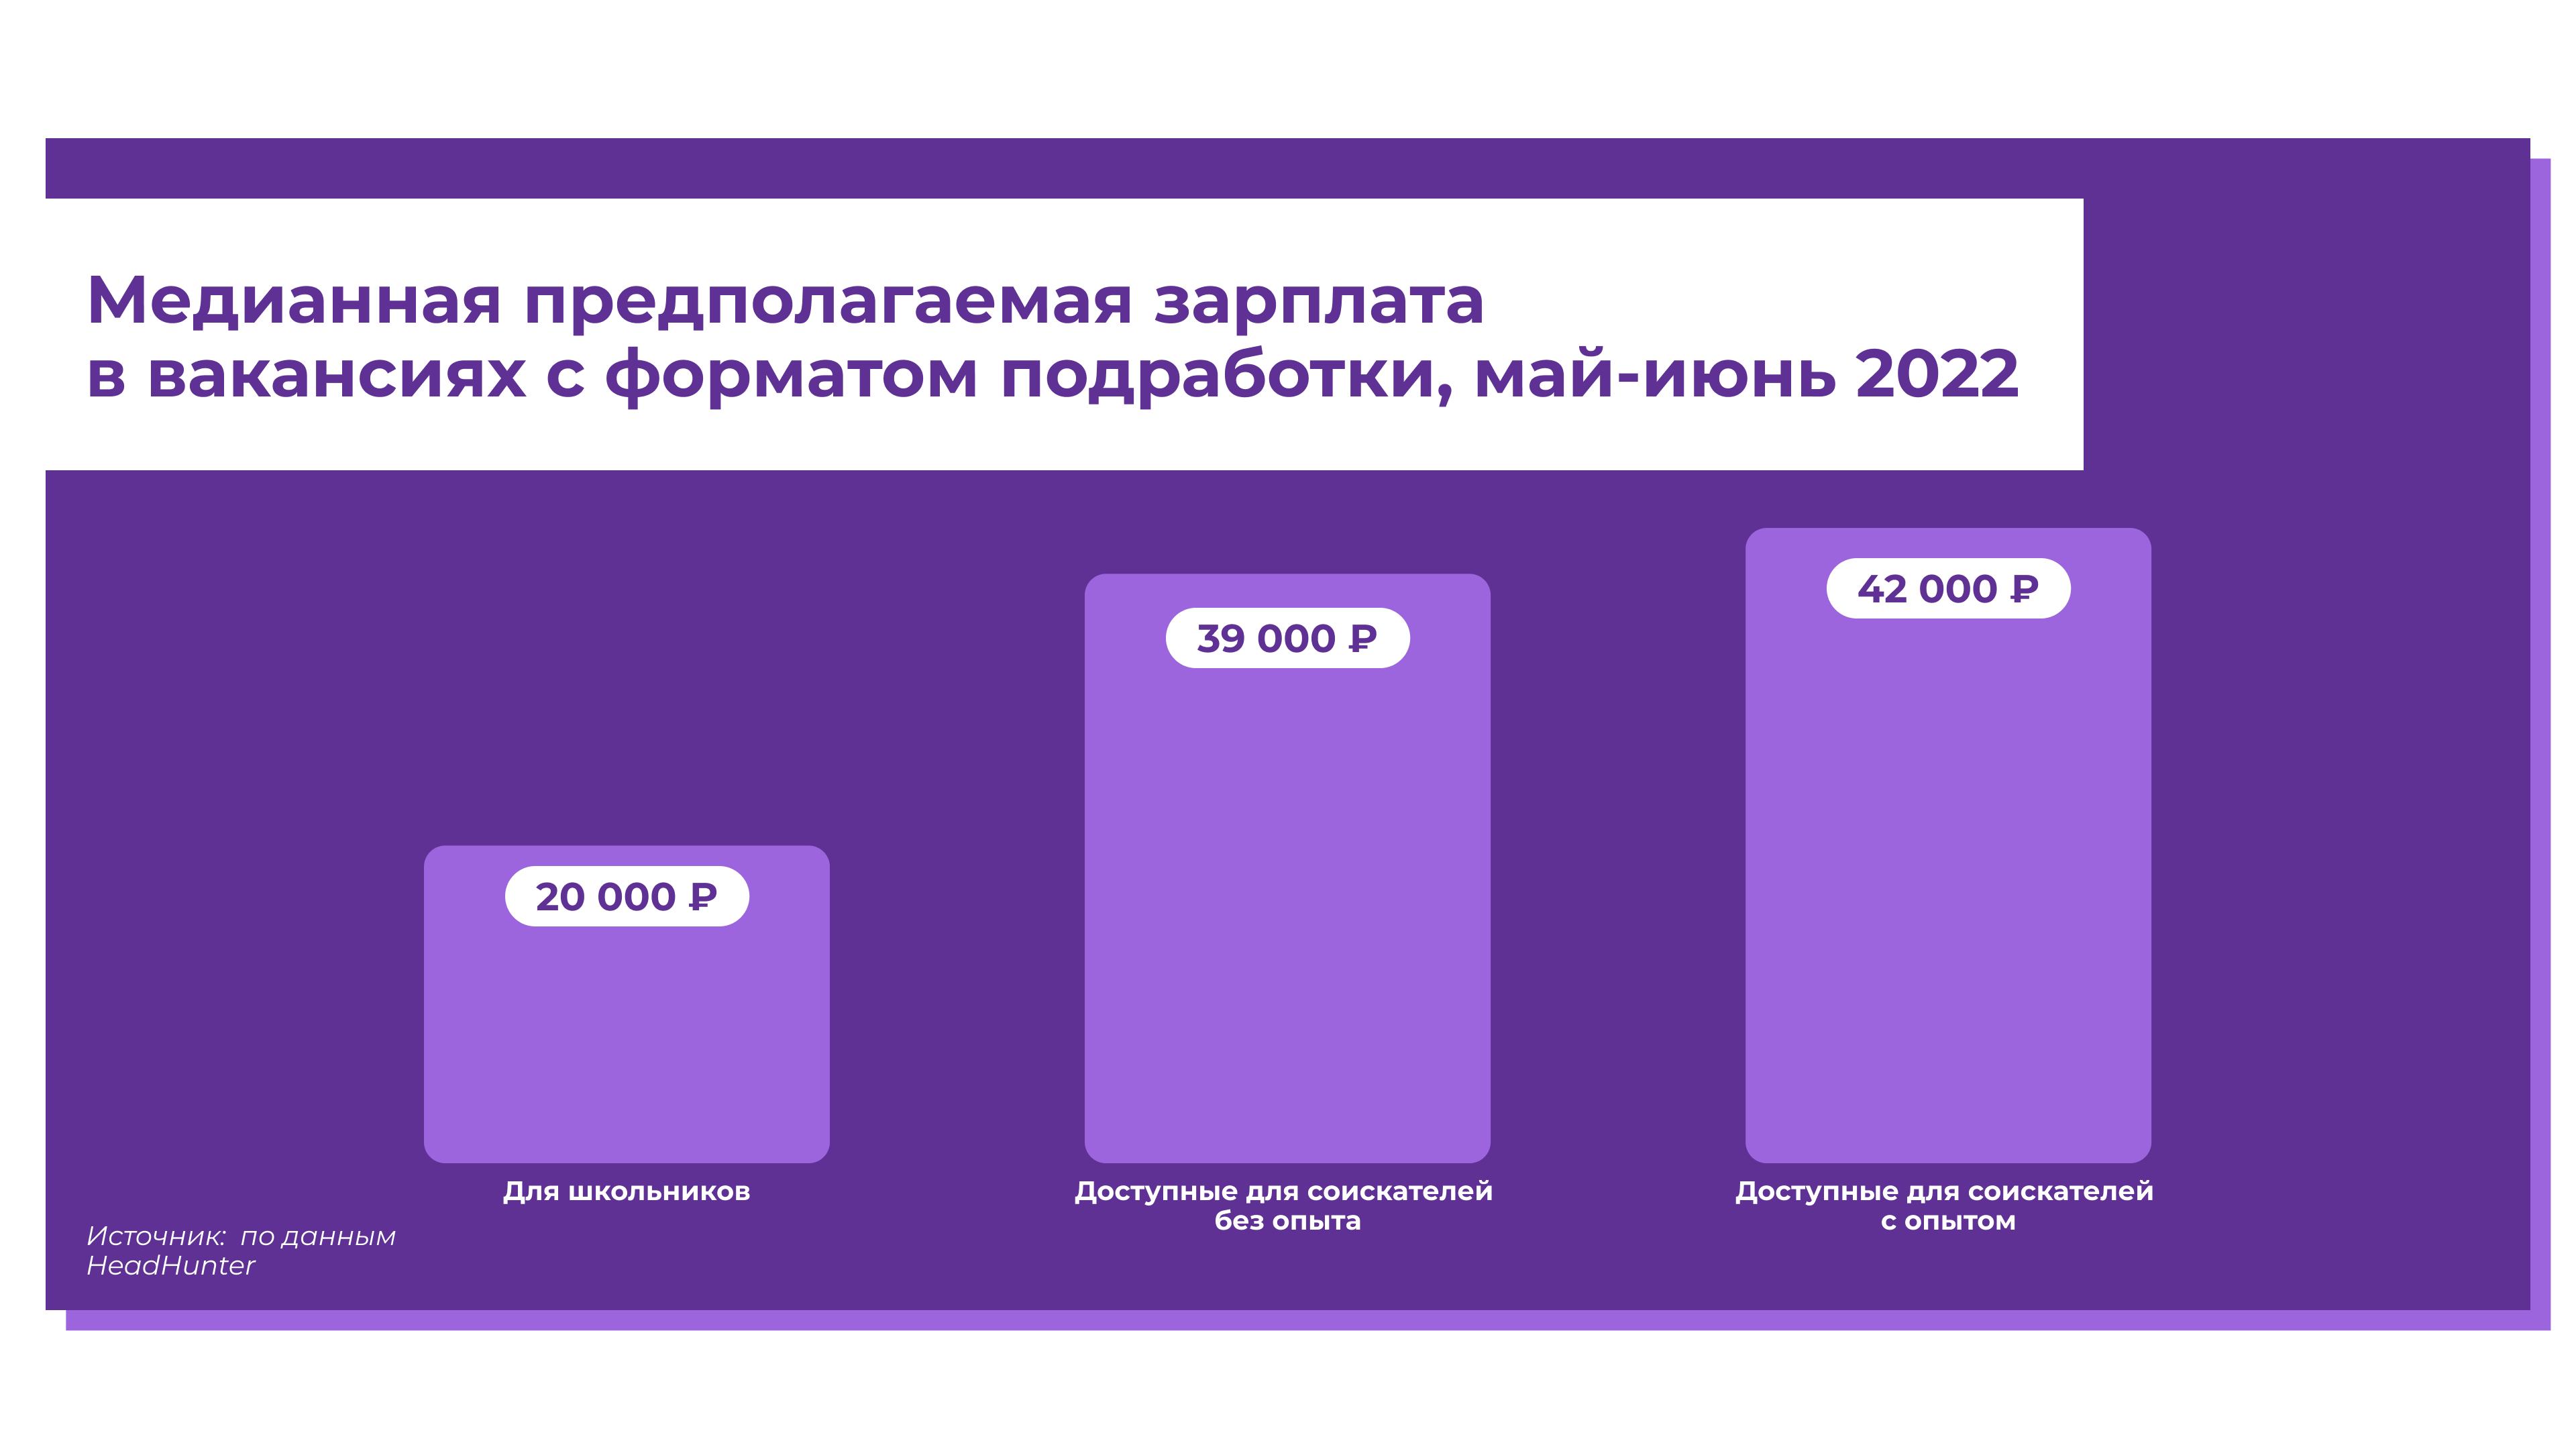 Зарплата на вакансиях с форматом подработки летом 2022